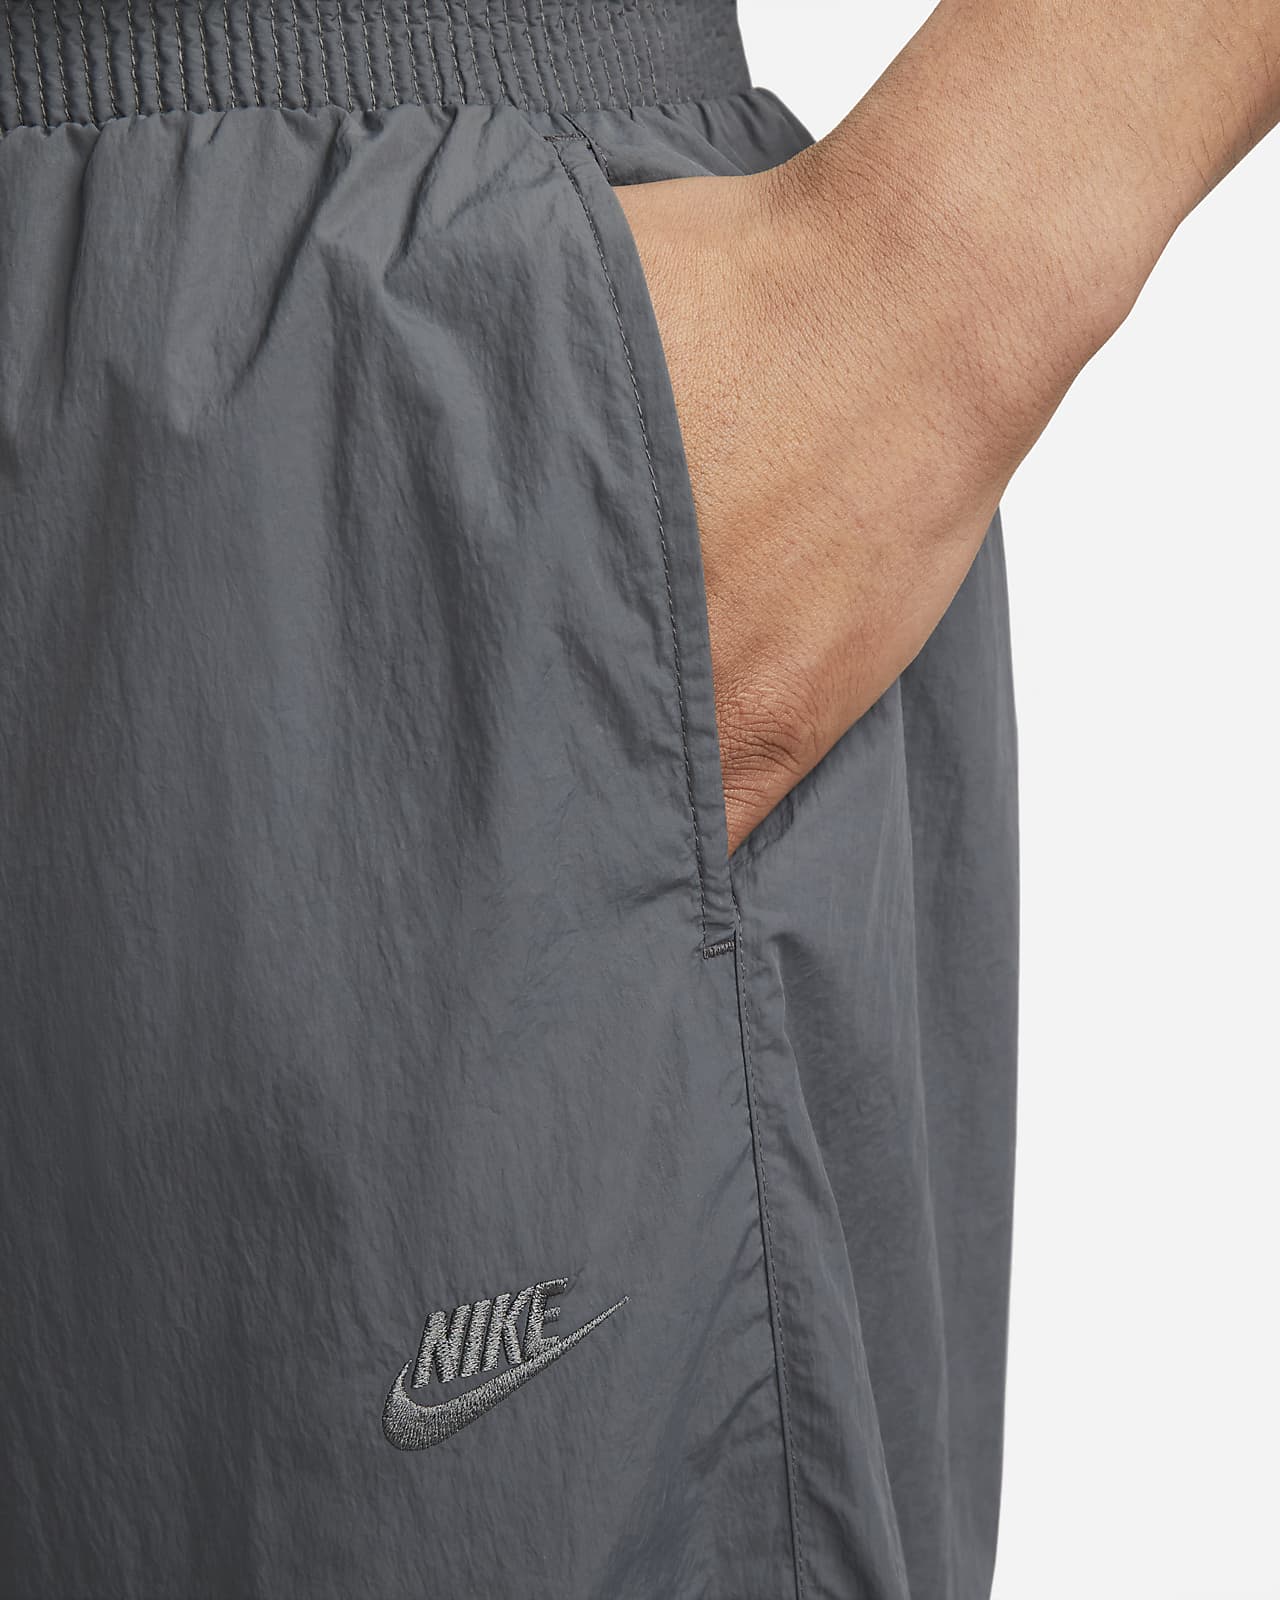 Nike Size S Sportswear Men’s Swoosh Cuffed Woven Track pants